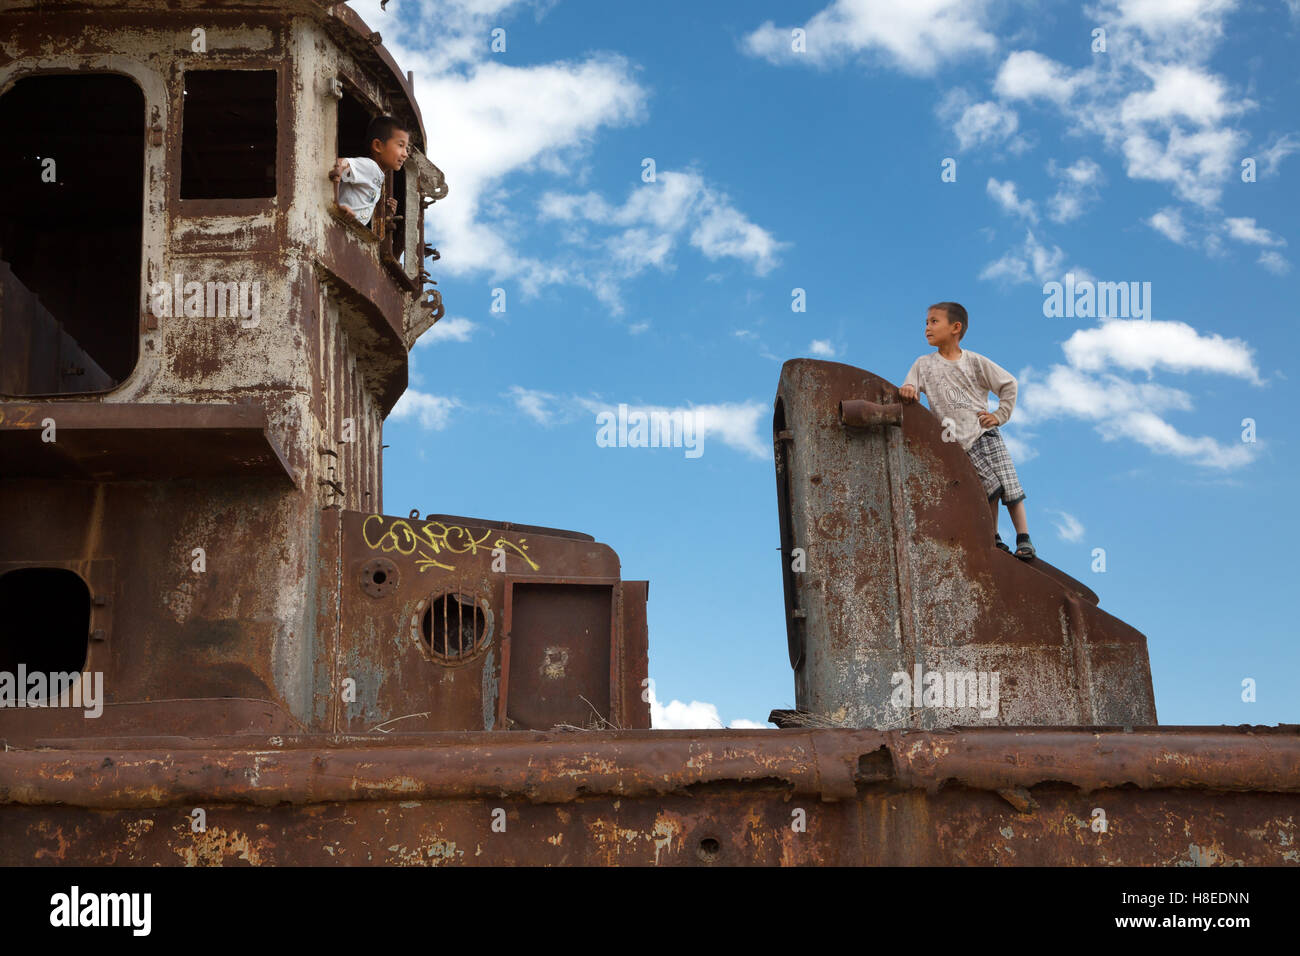 Les enfants jouant sur les bateaux abandonnés - Moynaq - Aral - Ouzbékistan - Asie - Karakalpakstan Banque D'Images